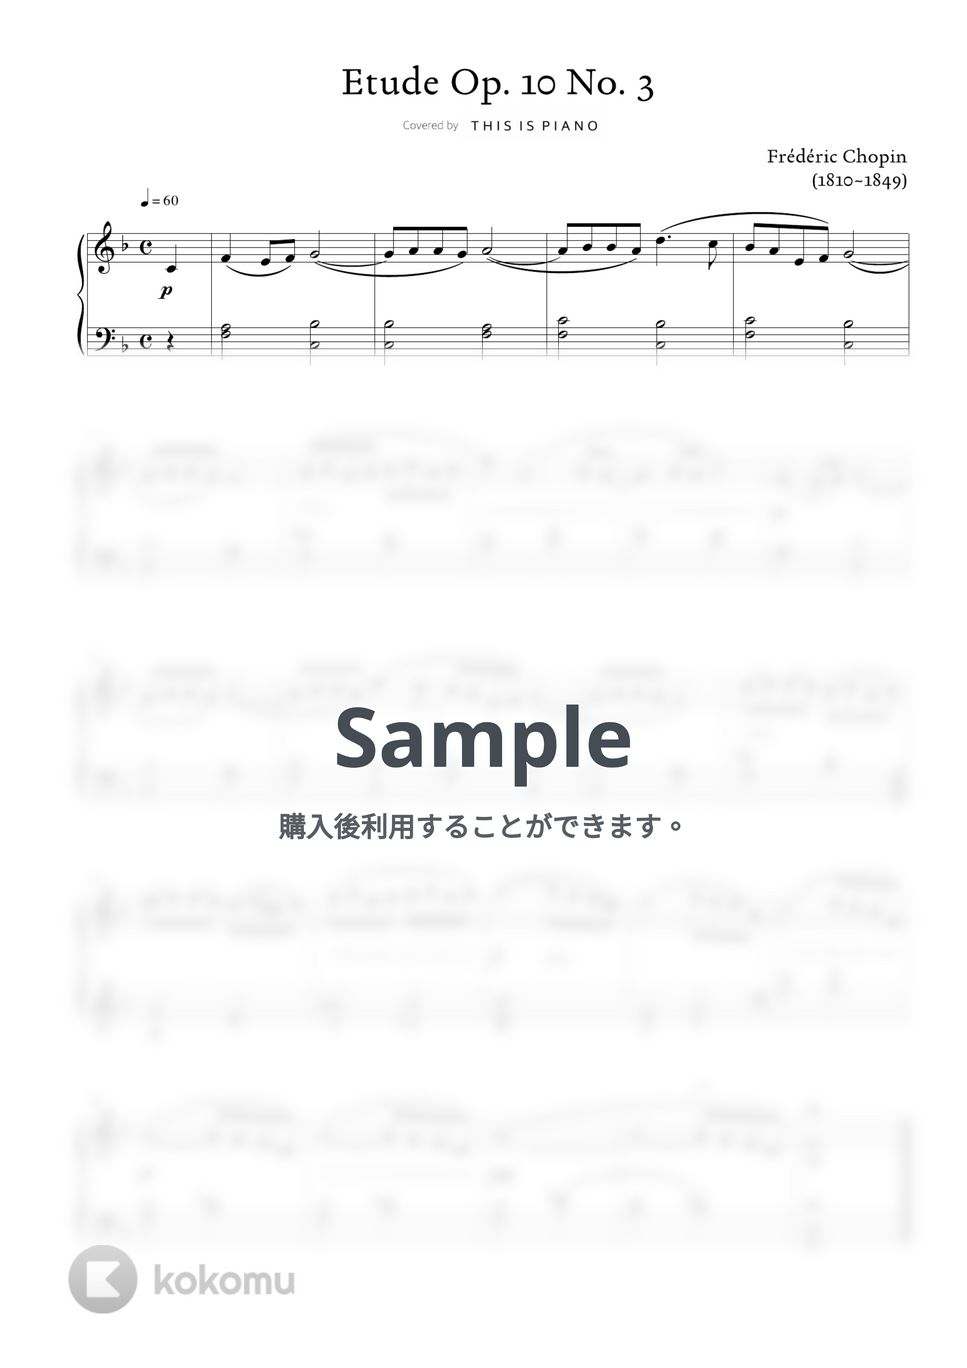 ショパン(F. Chopin) - エチュードOp. 10 No. 3 (別れの曲) (簡単バージョン) by THIS IS PIANO